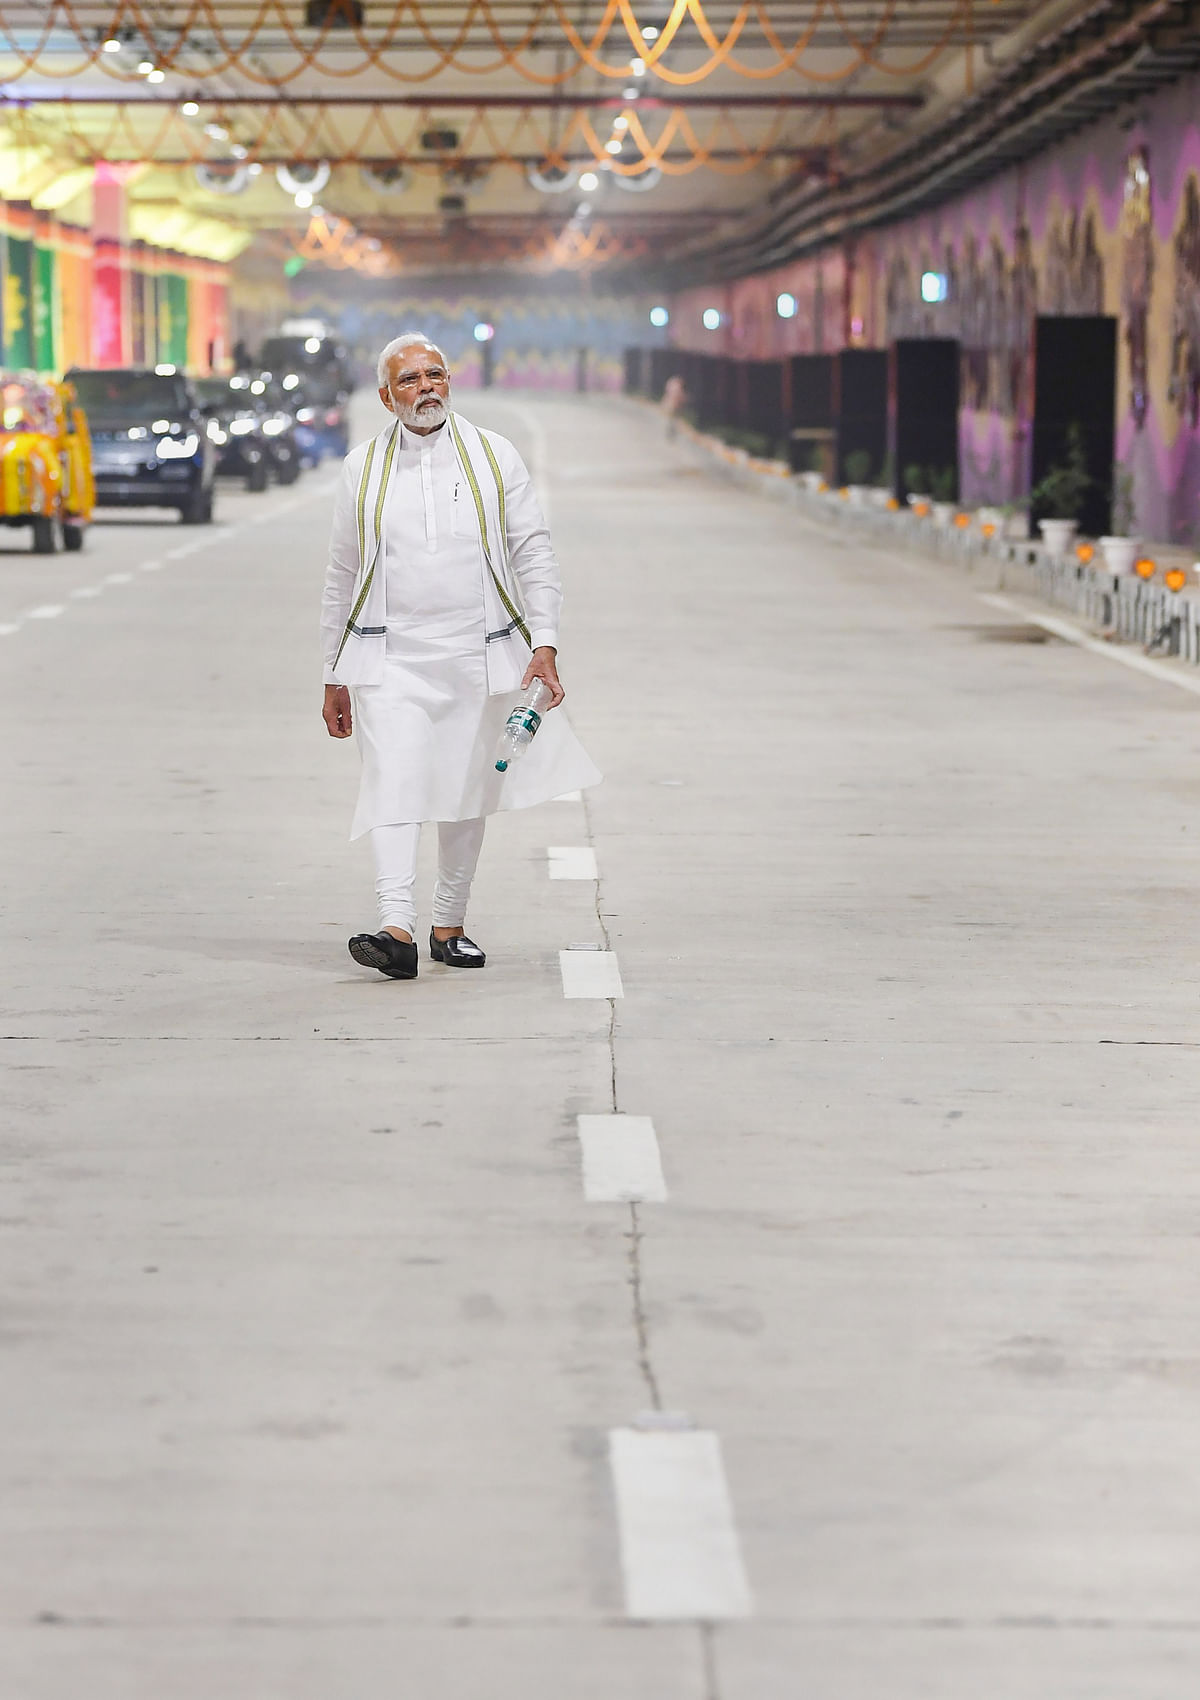 PM Modi inaugurated the main tunnel and five underpasses of the Pragati Maidan Integrated Transit Corridor in Delhi.